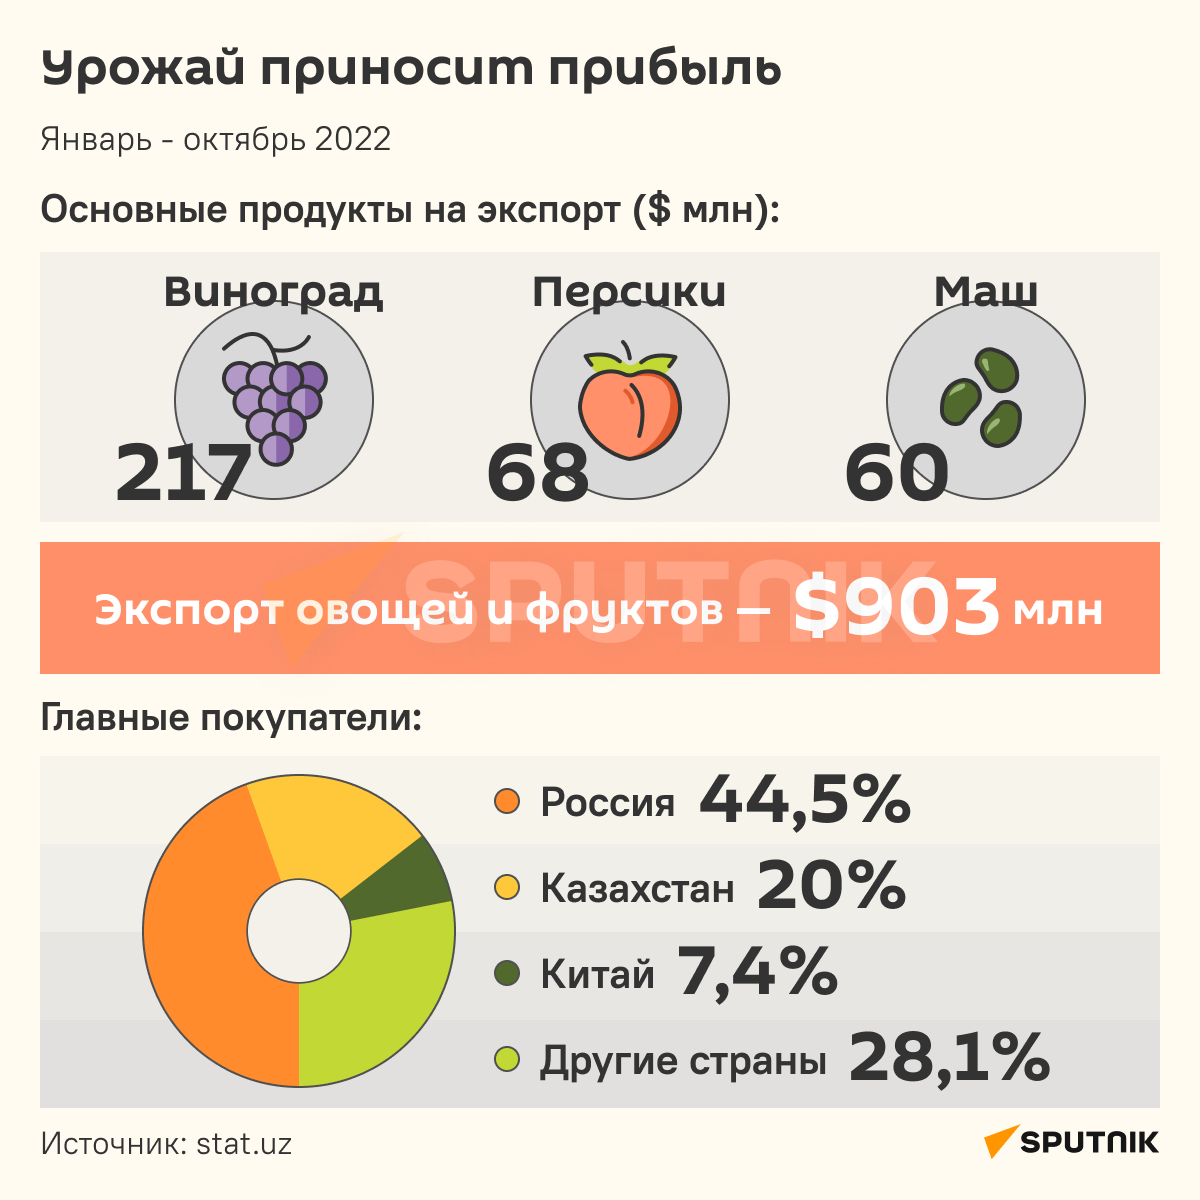 Основные продукты на экспорт инфографика - Sputnik Узбекистан